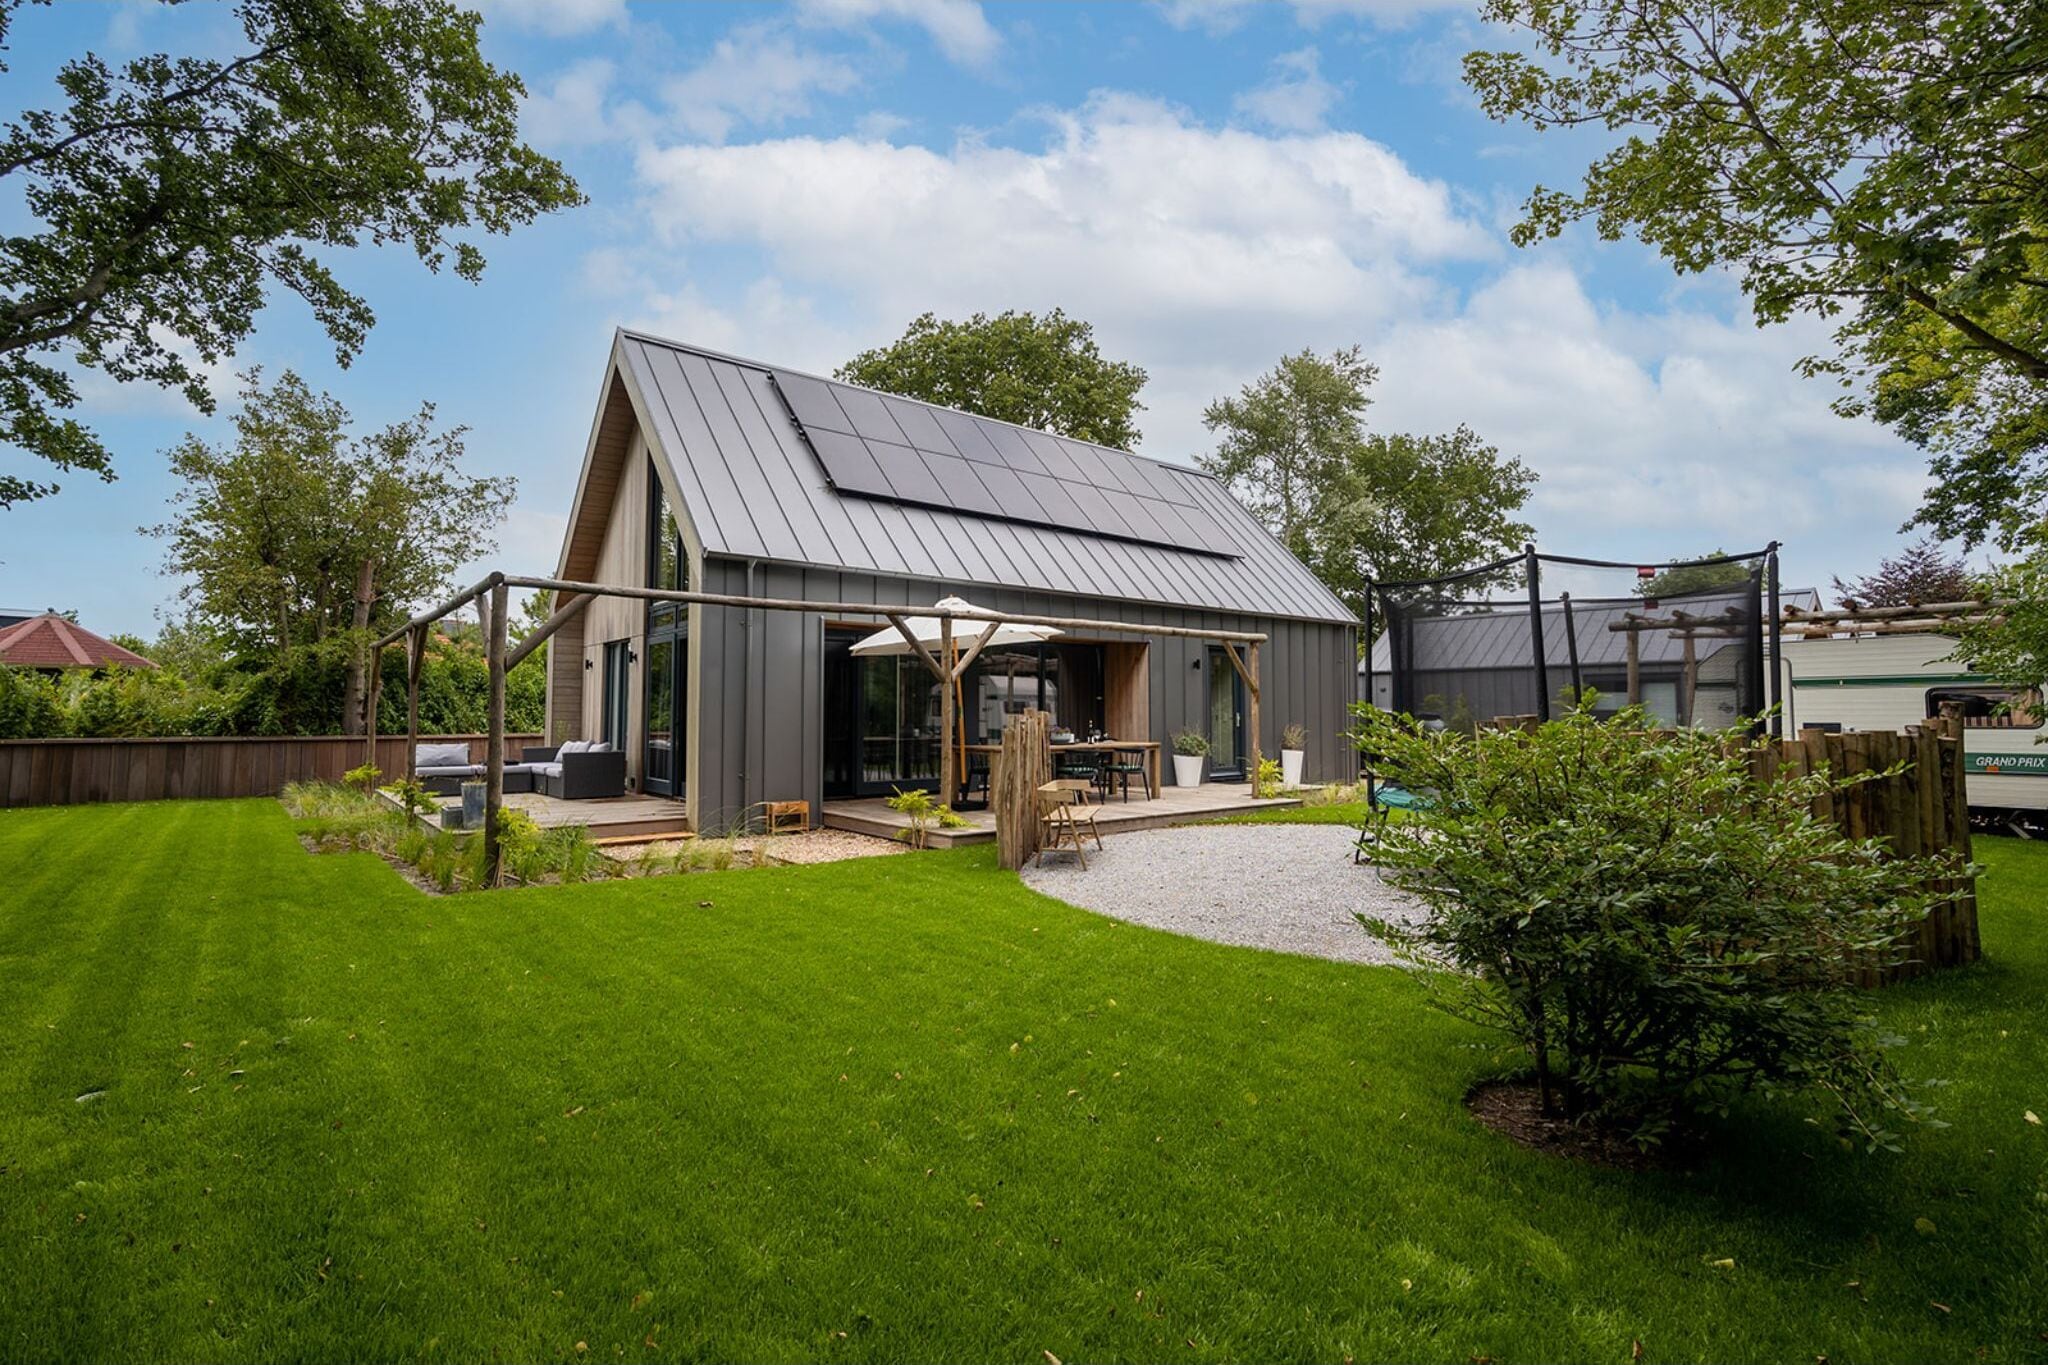 Maison durable de luxe atmosphérique avec jardin spacieux